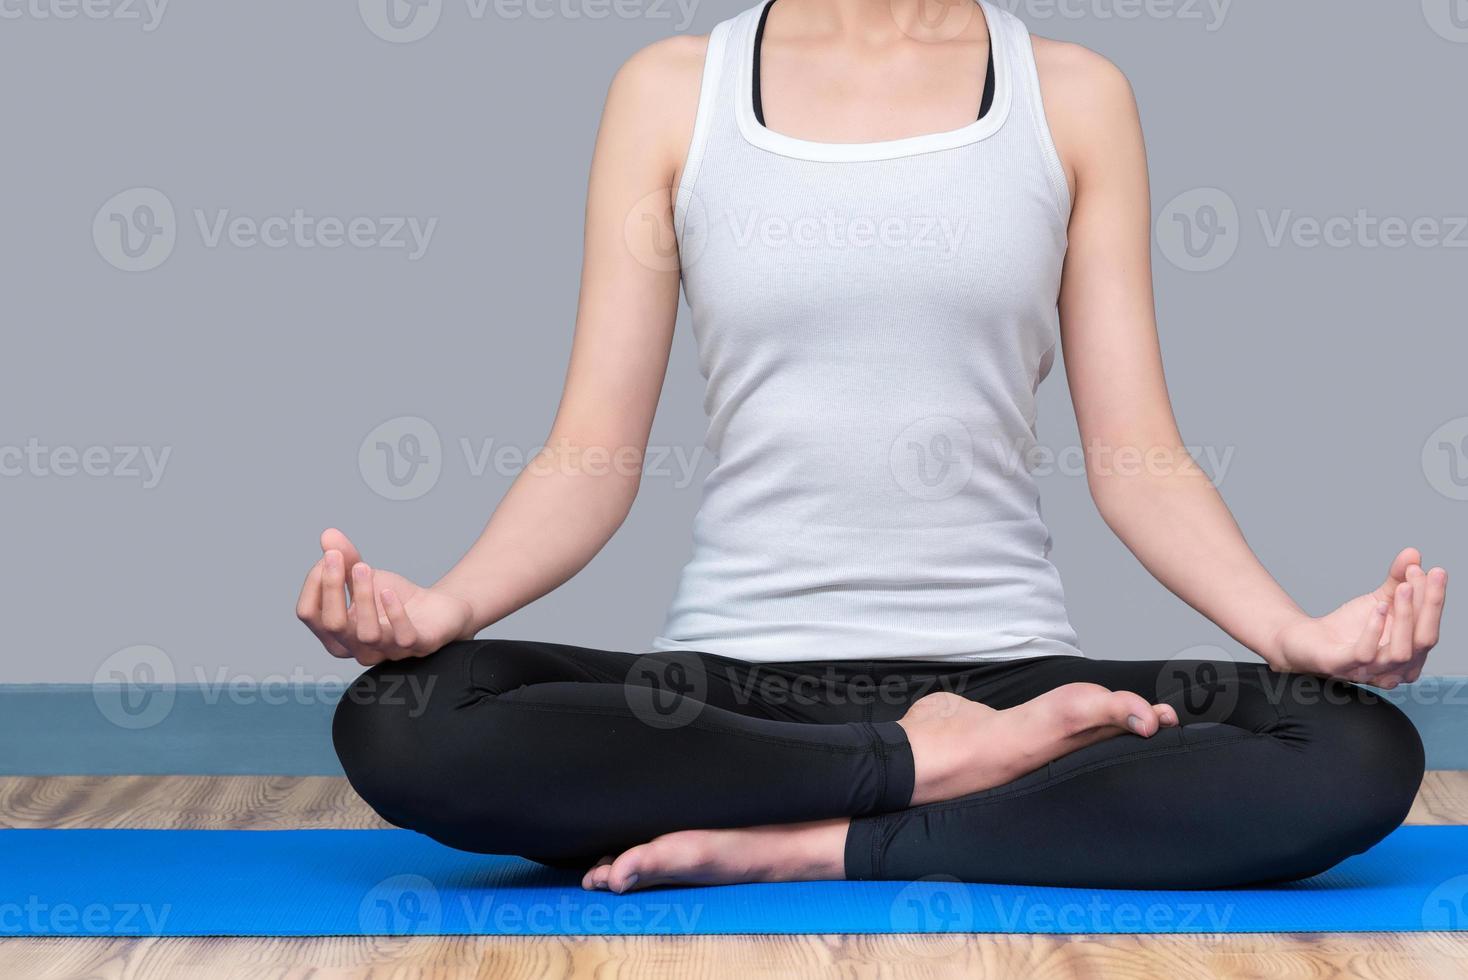 jonge vrouw blijf kalm en mediteert terwijl ze yoga beoefent om de innerlijke vrede te verkennen. yoga en meditatie hebben goede voordelen voor de gezondheid. fotoconcept voor yogasport en een gezonde levensstijl. foto